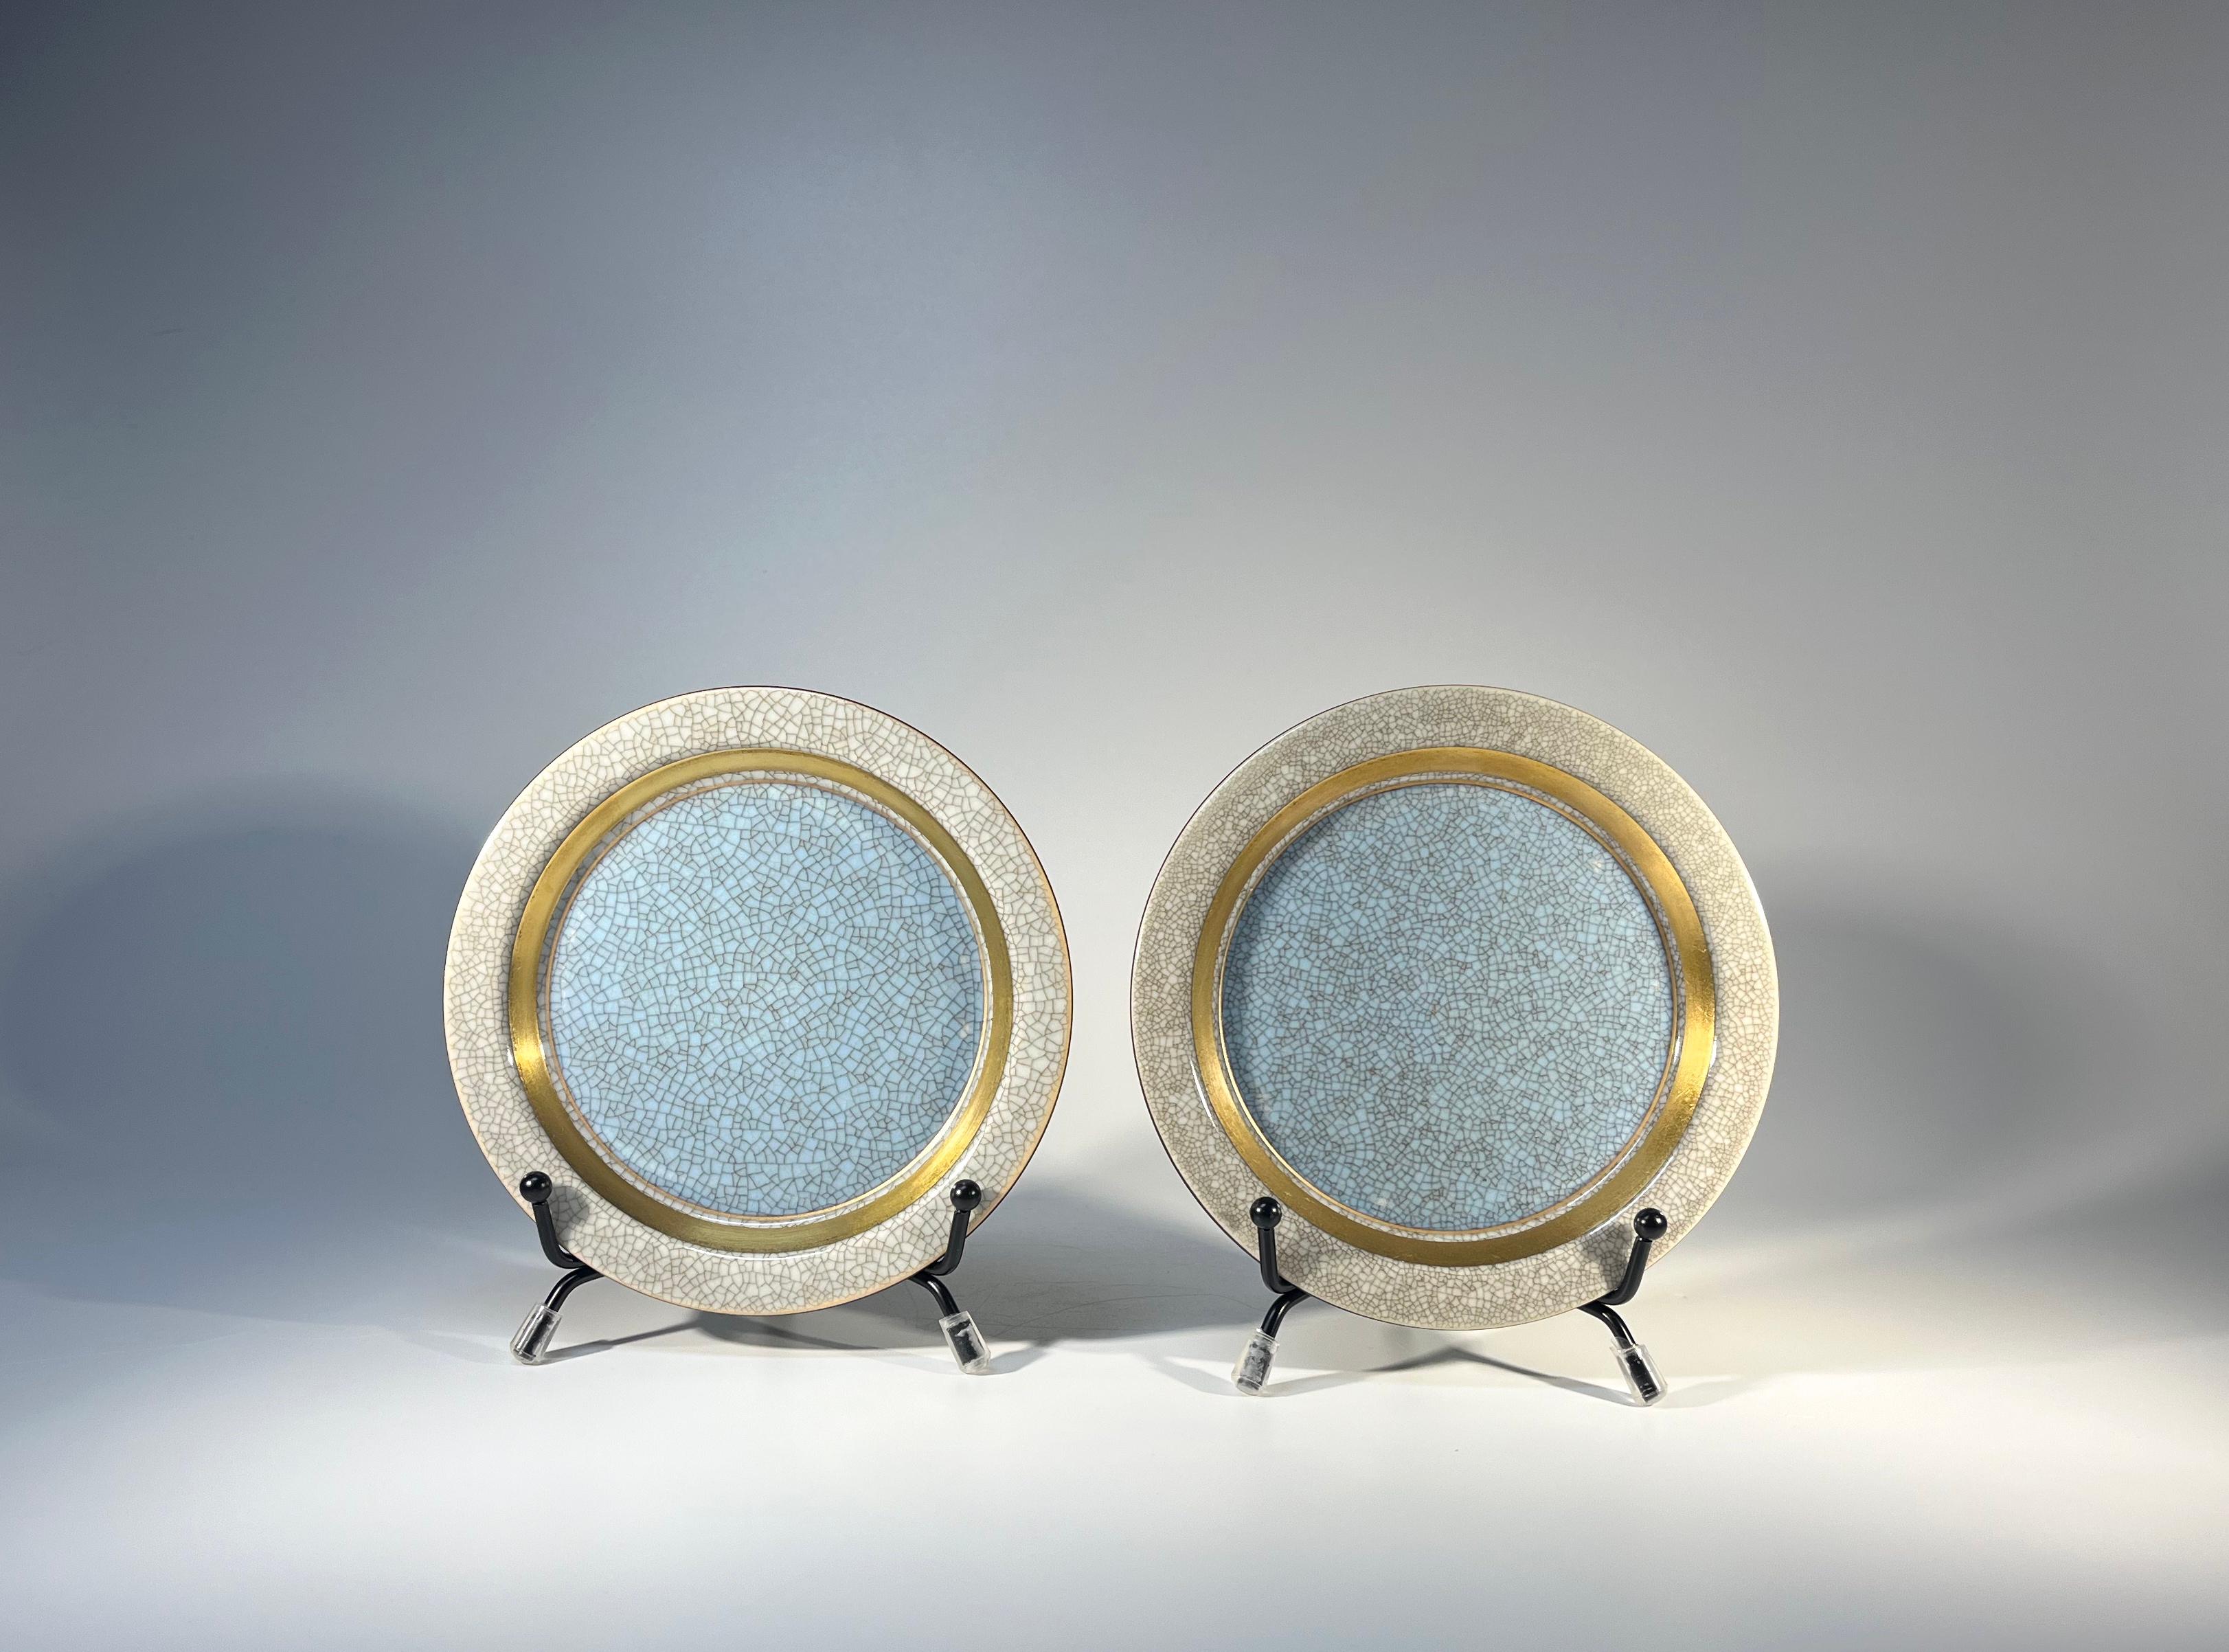 Pair Powder Blue Thorkild Olsen Royal Copenhagen Craquelure Porcelain Trays 3010 For Sale 2